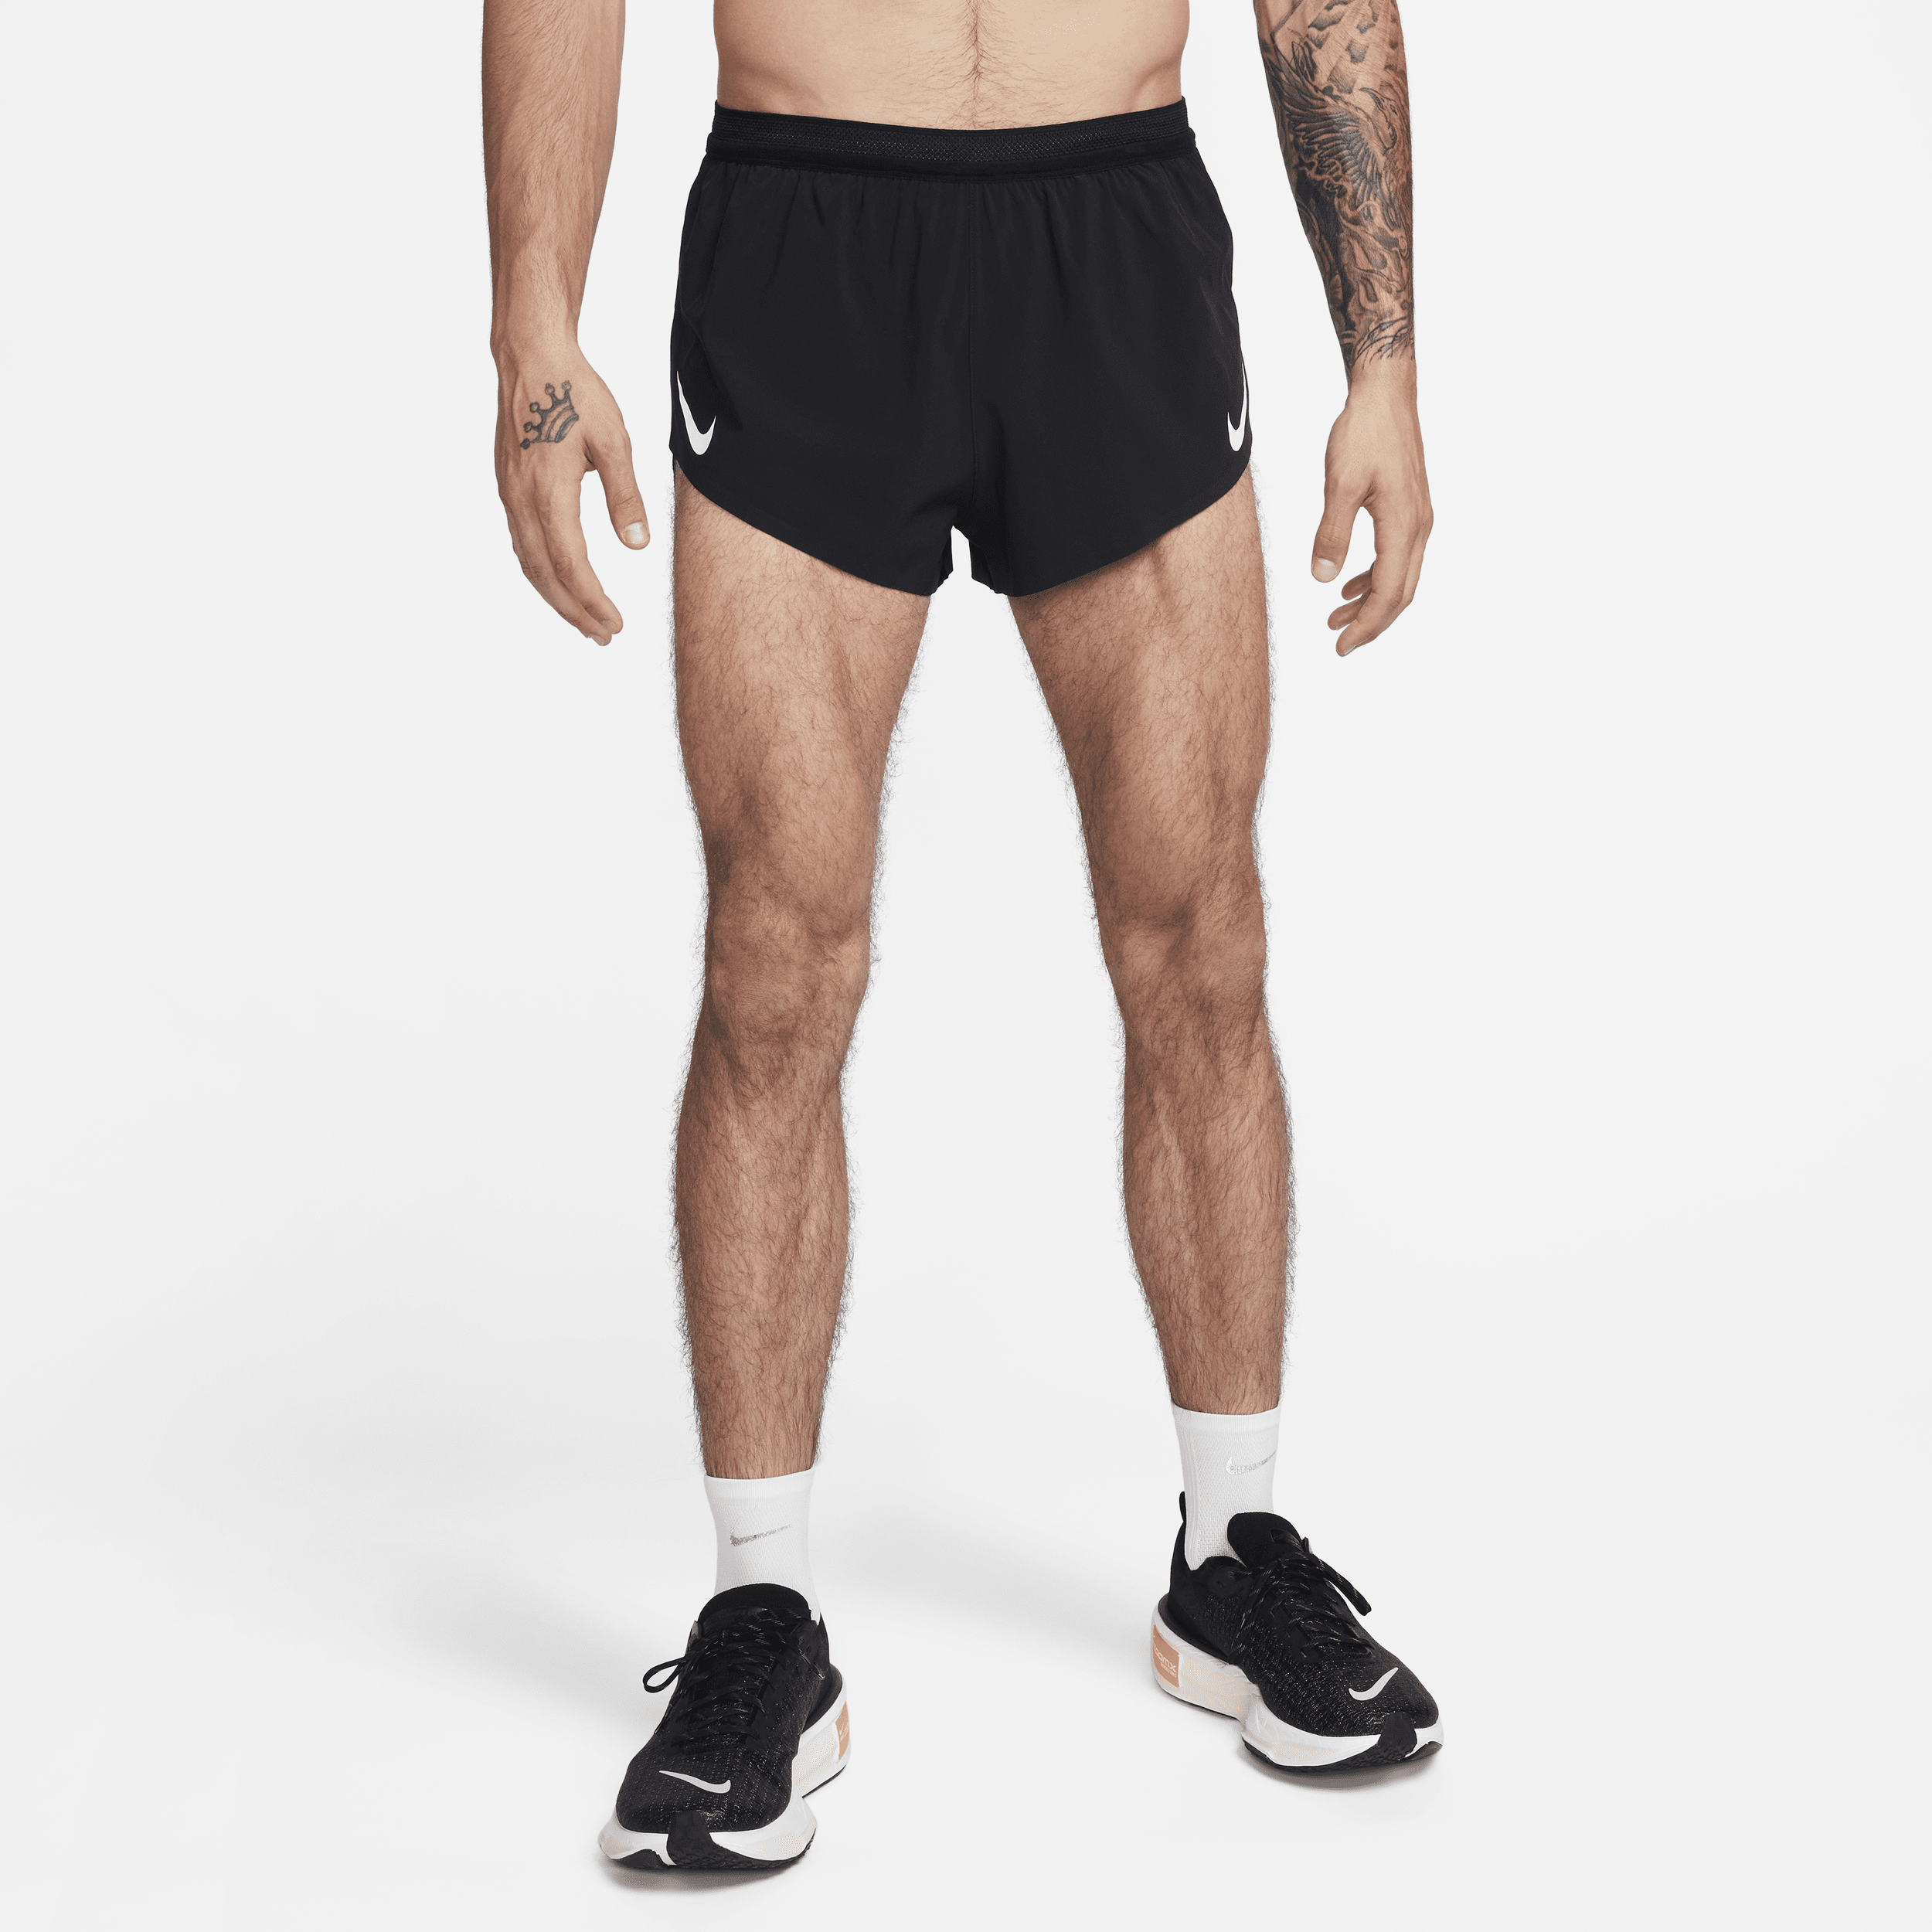 Shorts da running con slip foderato 5 cm Dri-FIT ADV Nike AeroSwift – Uomo - Nero